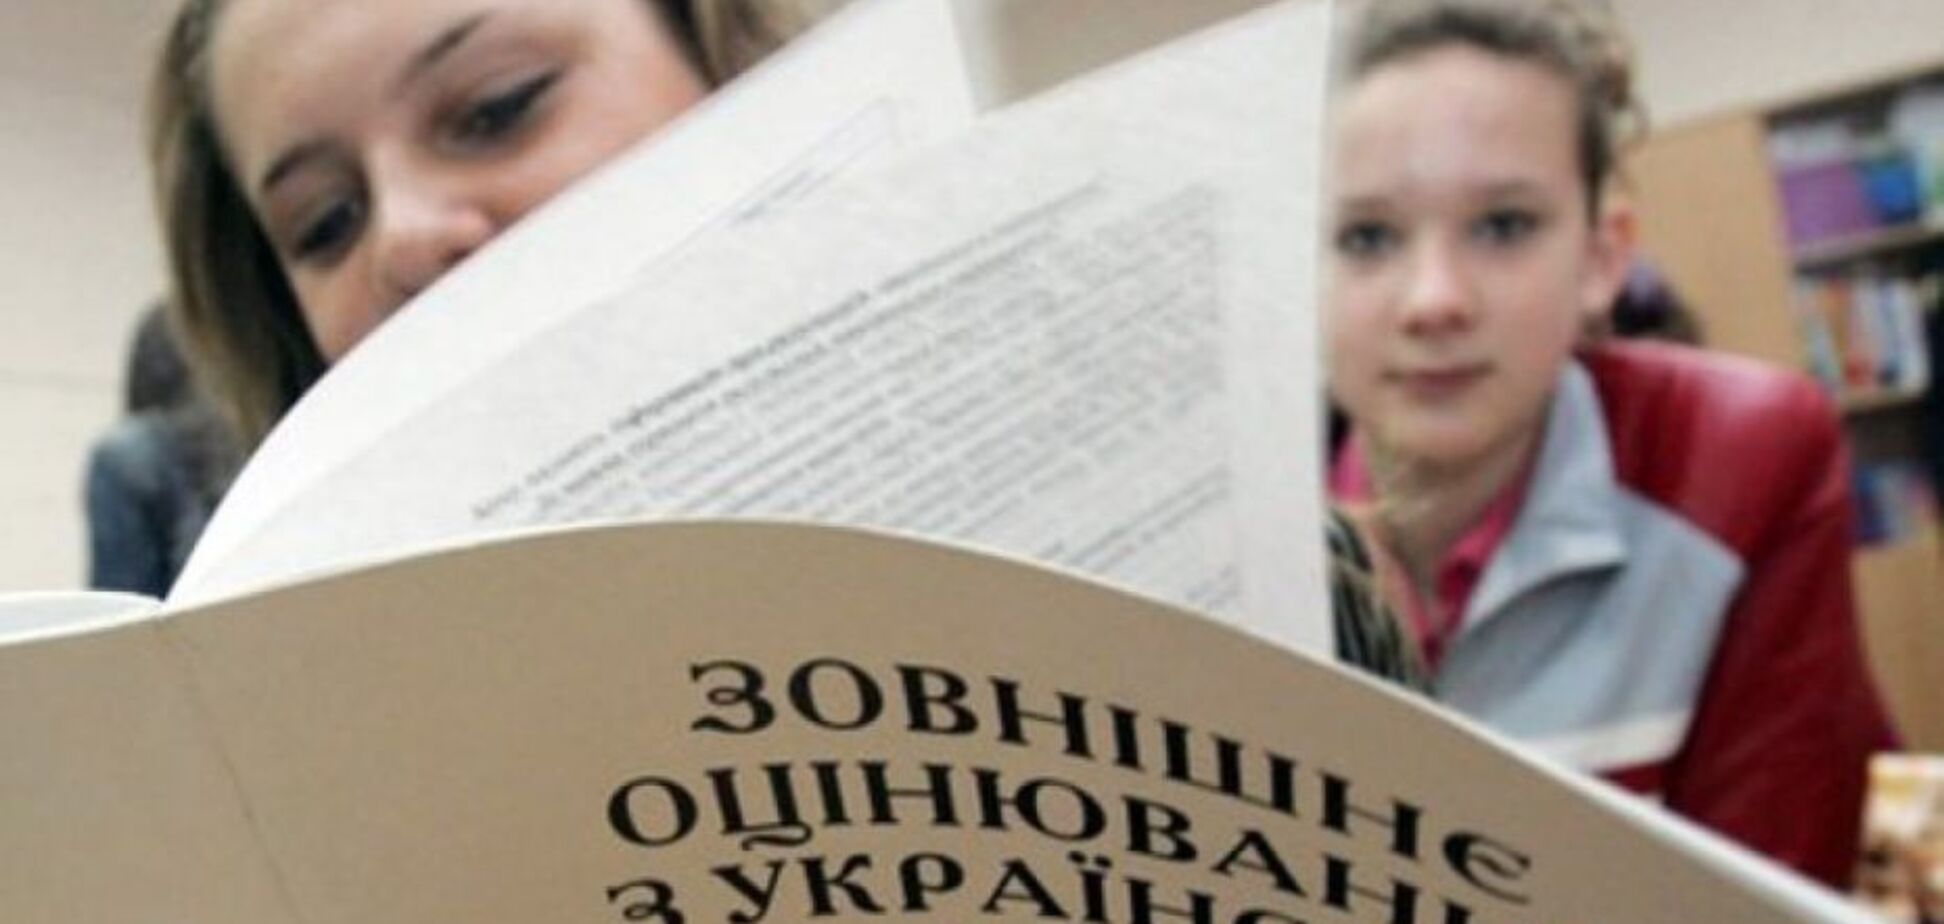 ЗНО-2018: шоста частина школярів завалила українську мову